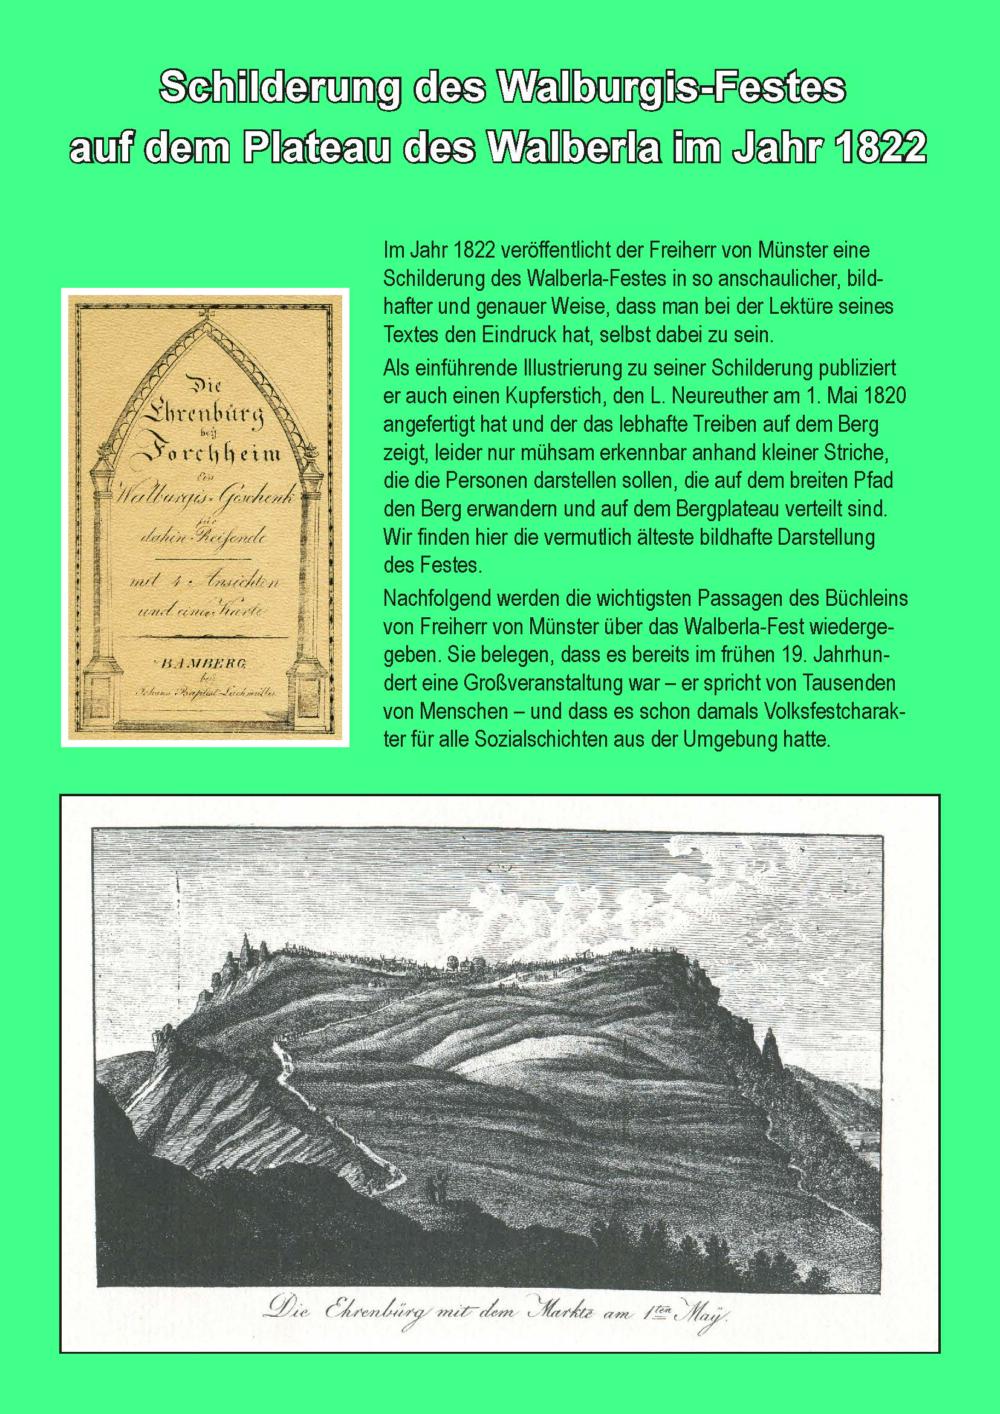 Abb. 45: Franz Karl Freiherr von Münster, Bericht über das Walberlafest, 1822, durch klicken auf das erste Bild gelangen Sie zu weiteren Bildern.